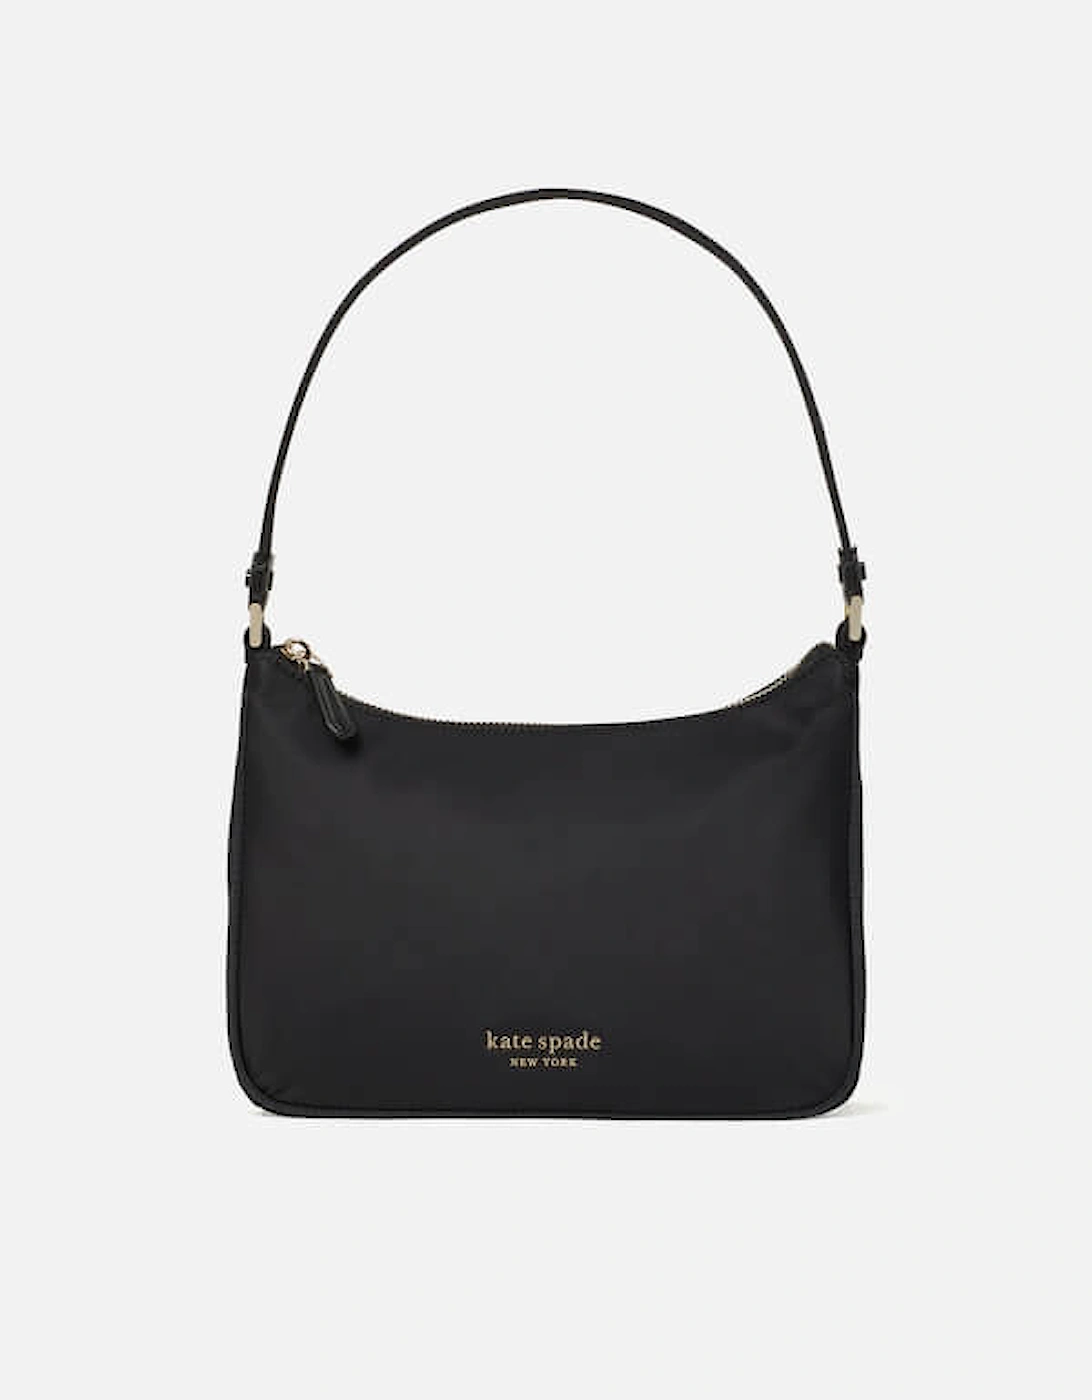 New York Women's Sam Nylon Shoulder Bag - Black, 2 of 1